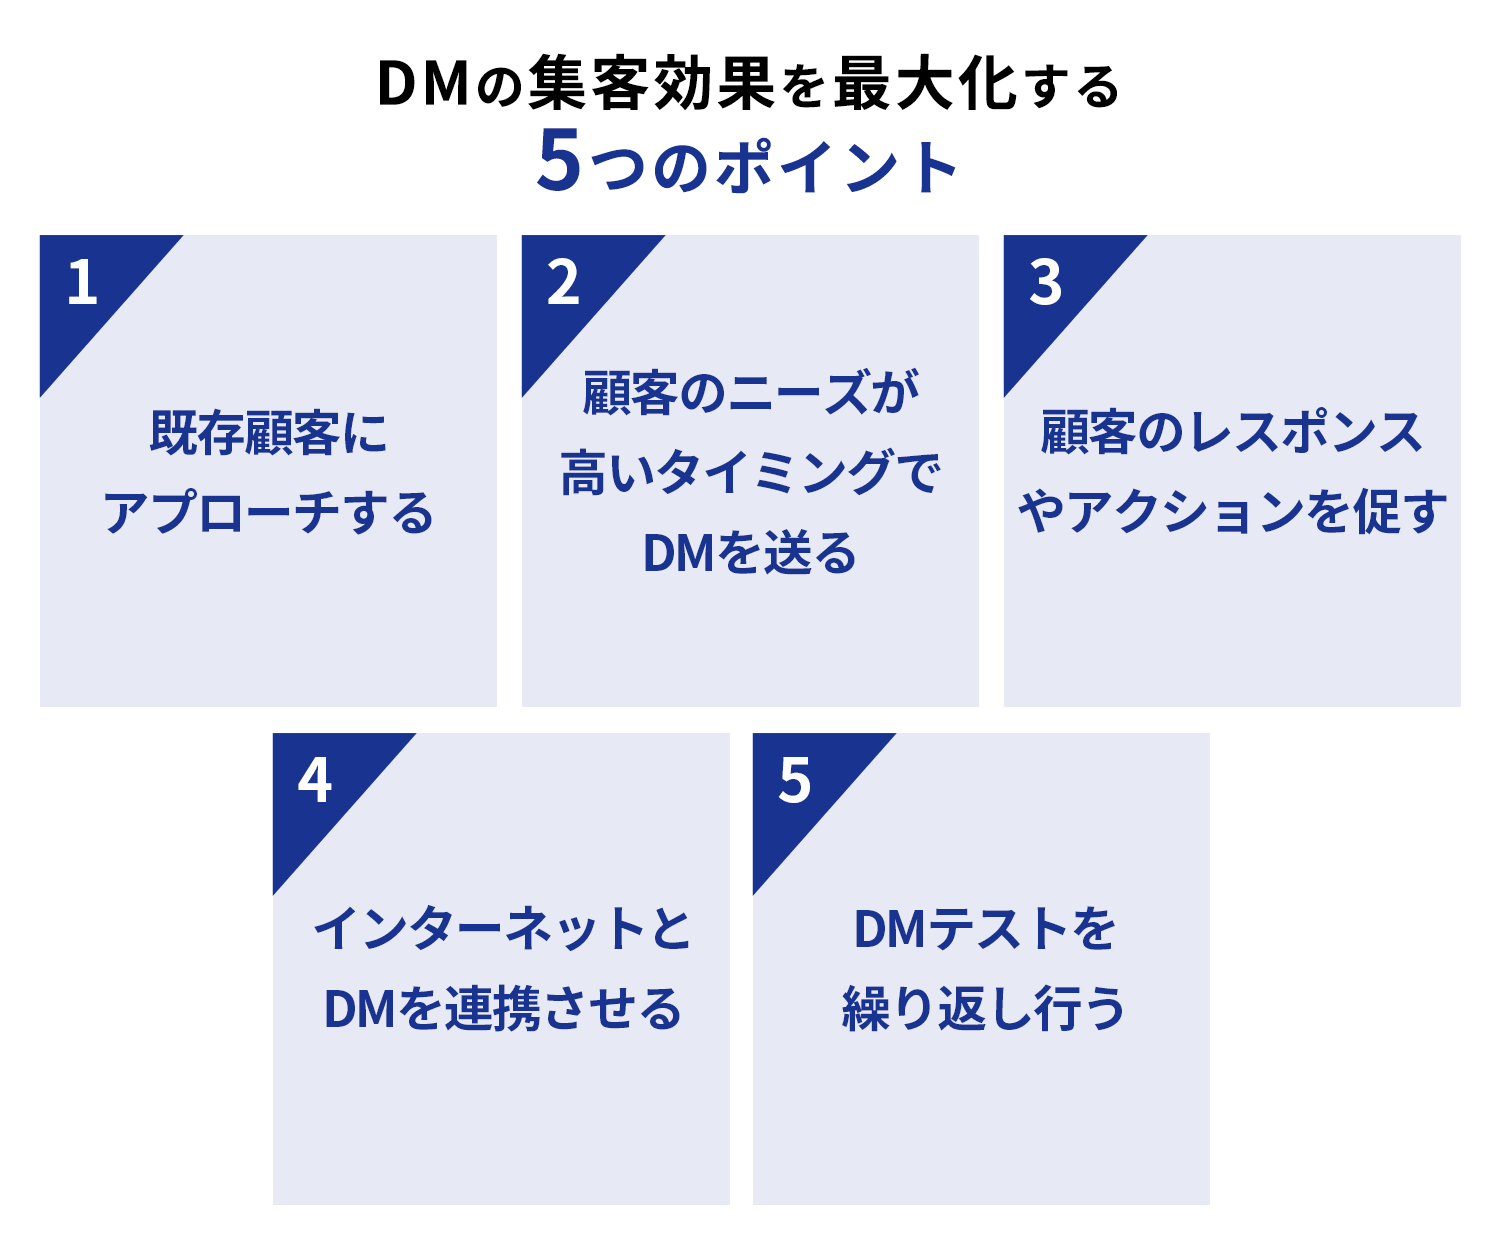 DMの集客効果を最大化する5つのポイント